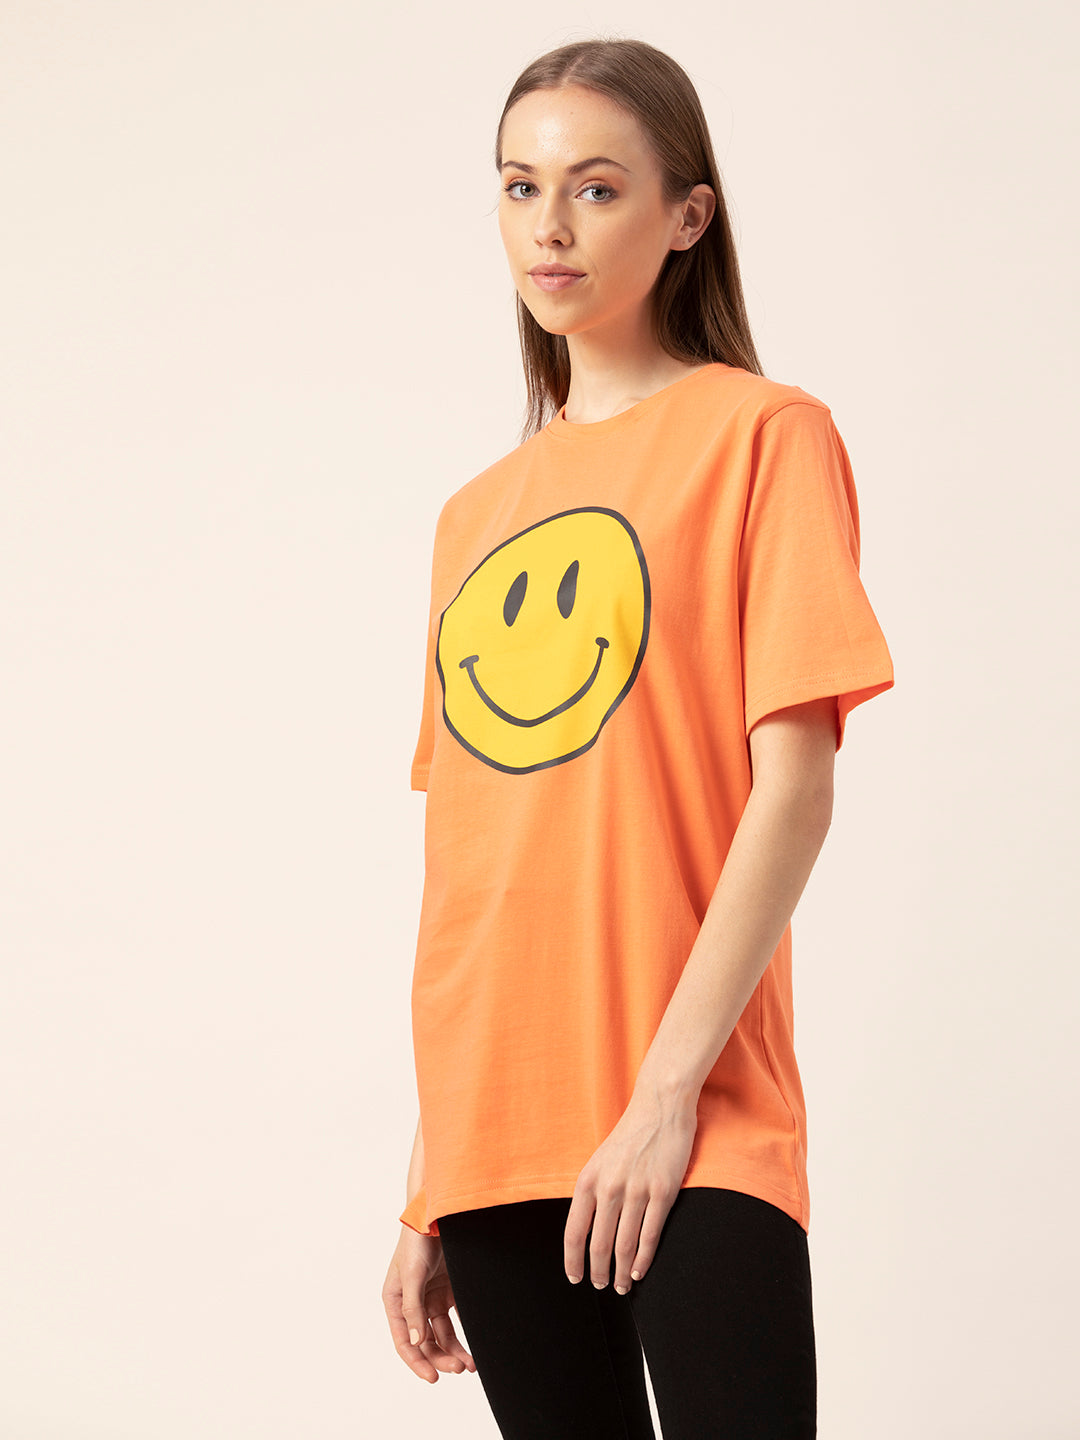 Smiley Women's Oversized T-Shirt